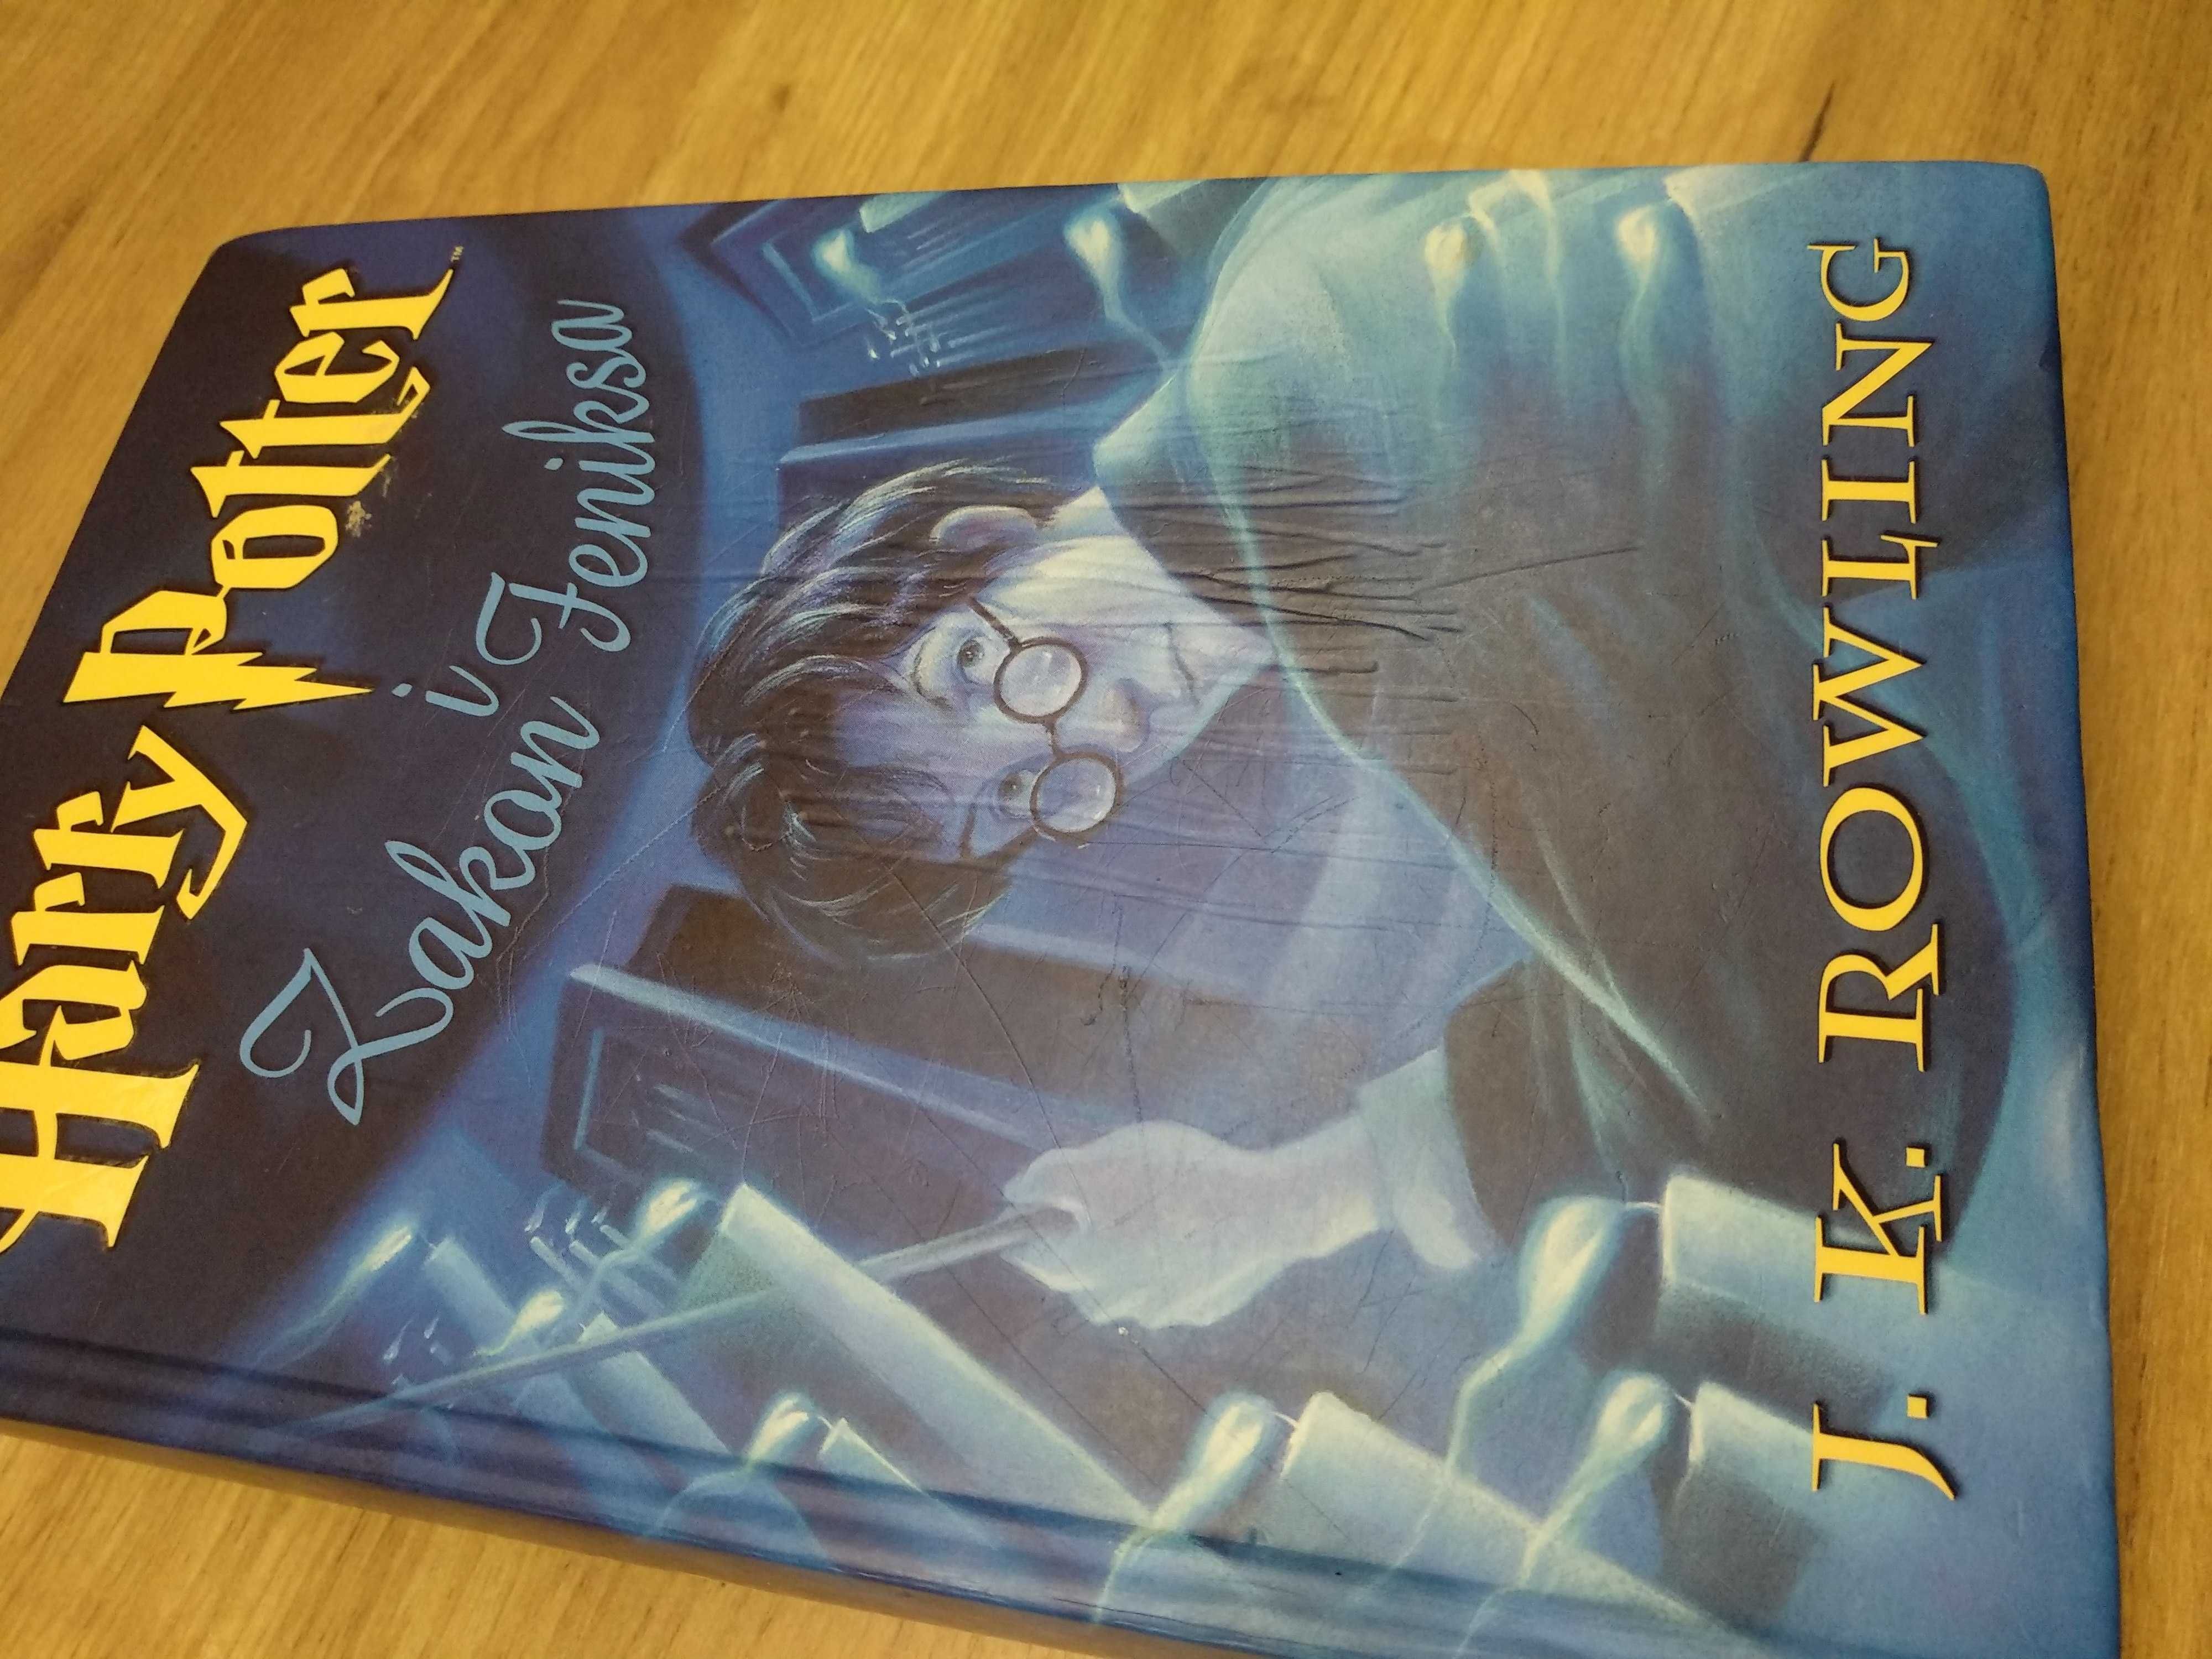 Harry Potter i Zakon Feniksa pierwsze wydanie stare twarda oprawa